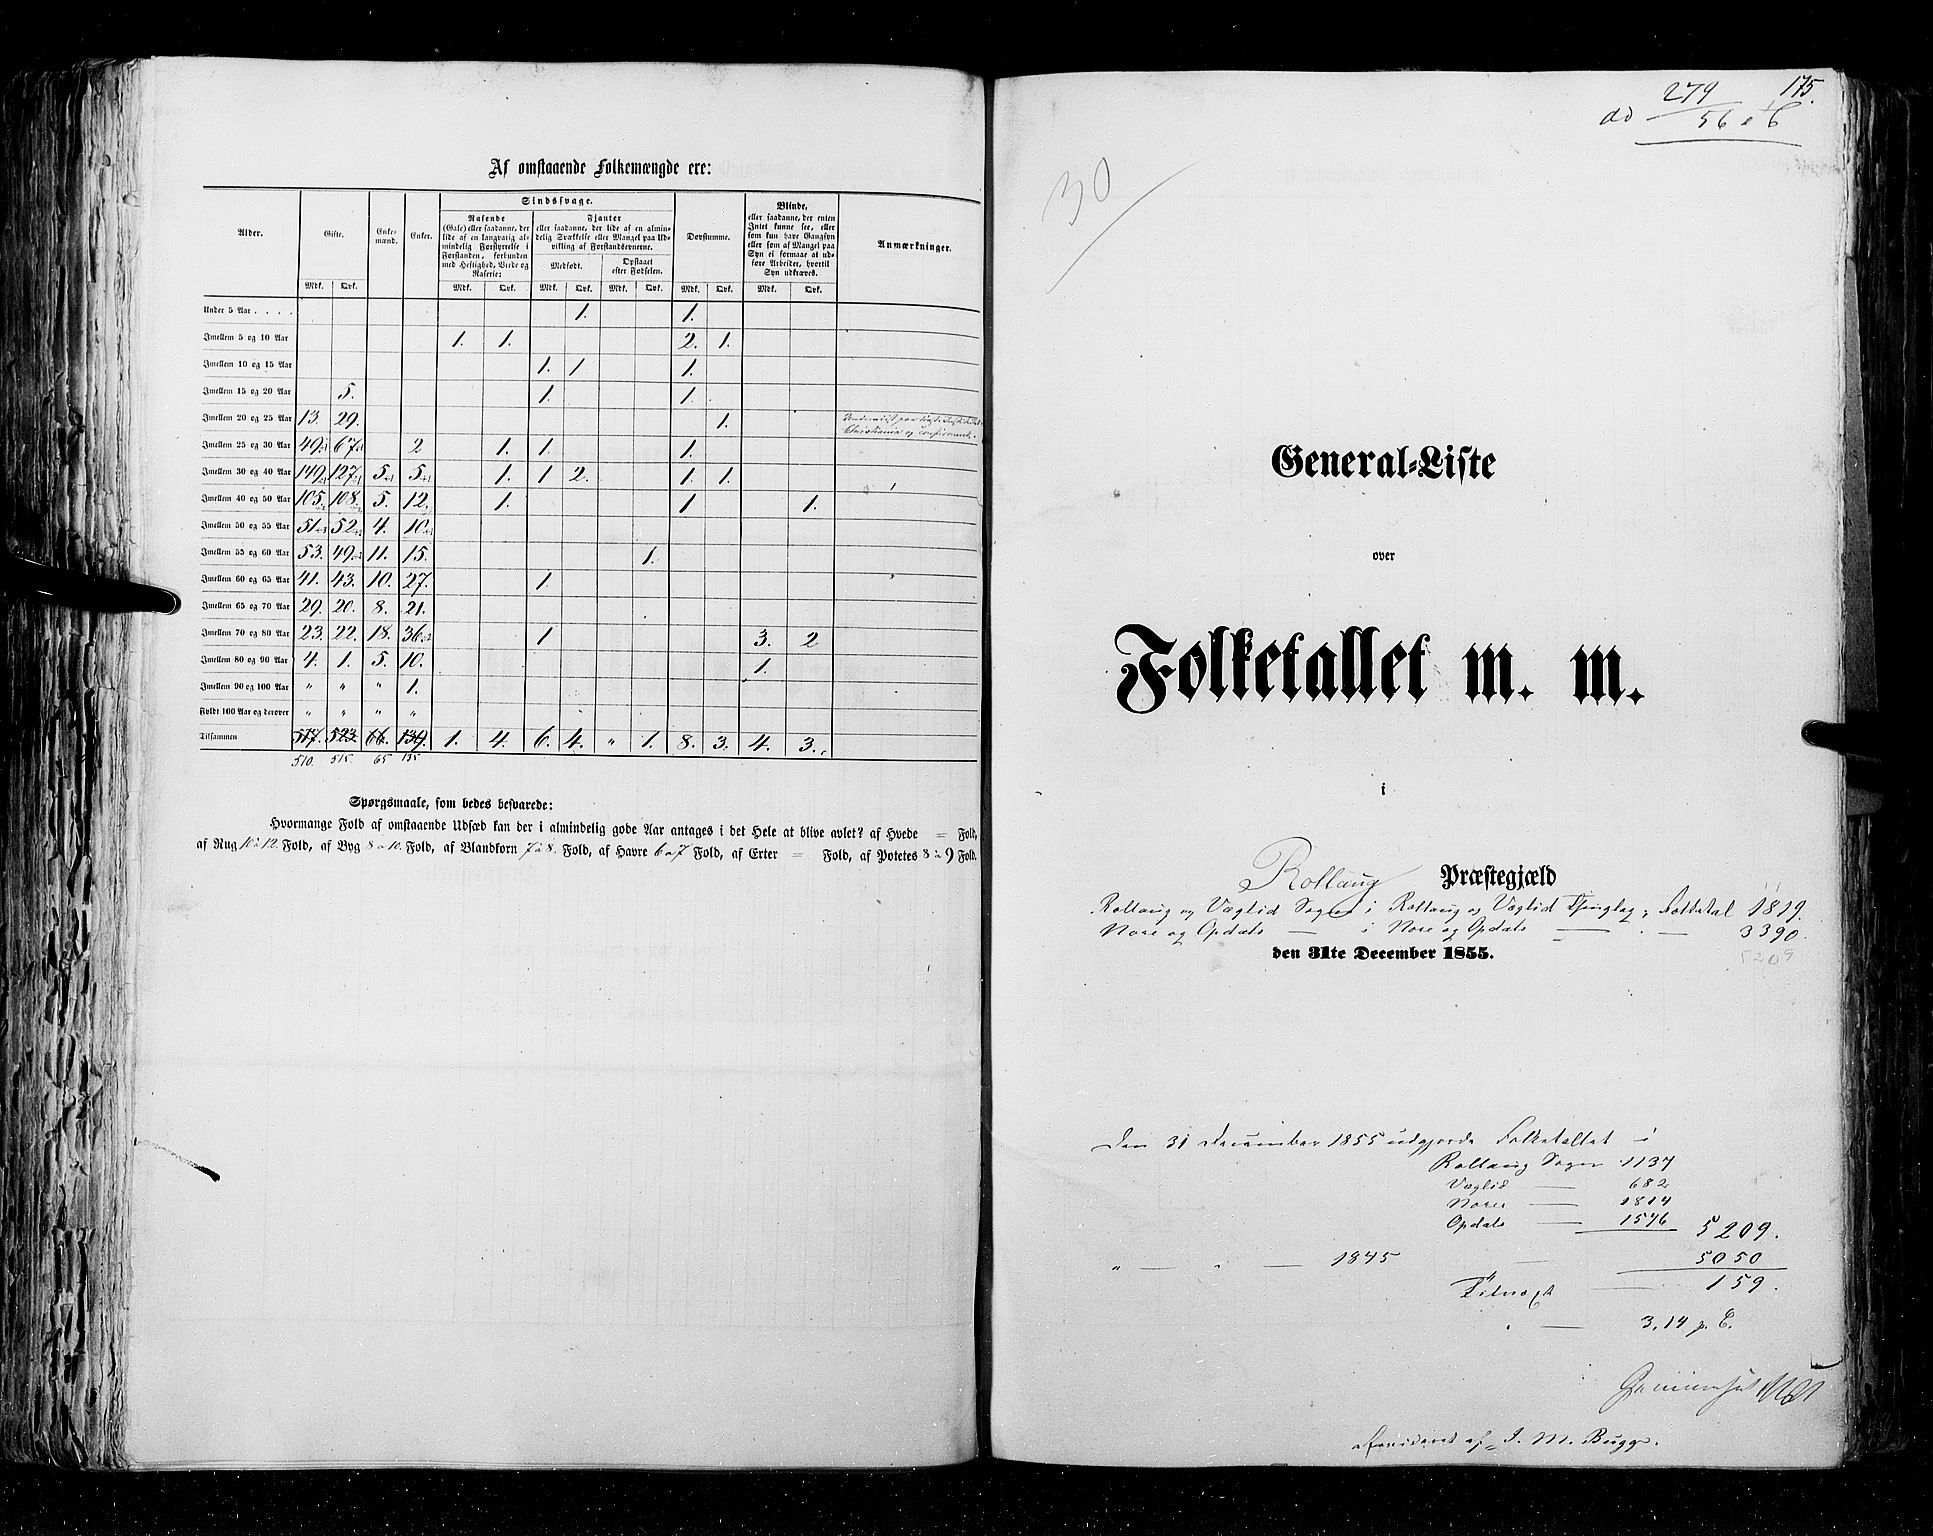 RA, Census 1855, vol. 2: Kristians amt, Buskerud amt og Jarlsberg og Larvik amt, 1855, p. 175